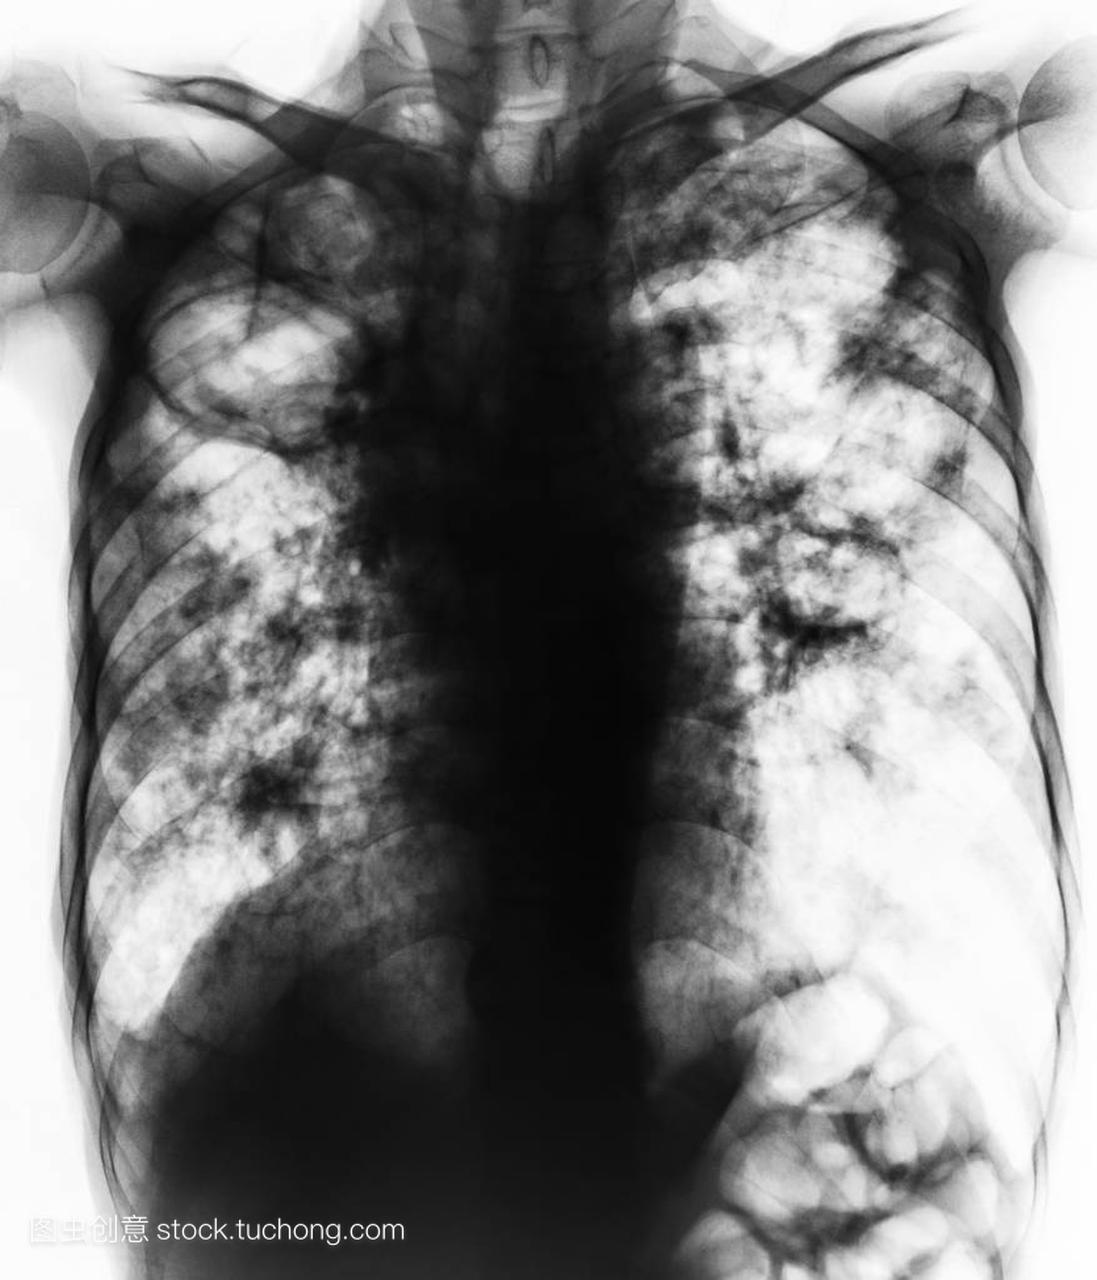 肺结核。胸部 x 光胶片显示纤维化、 腔、 间质